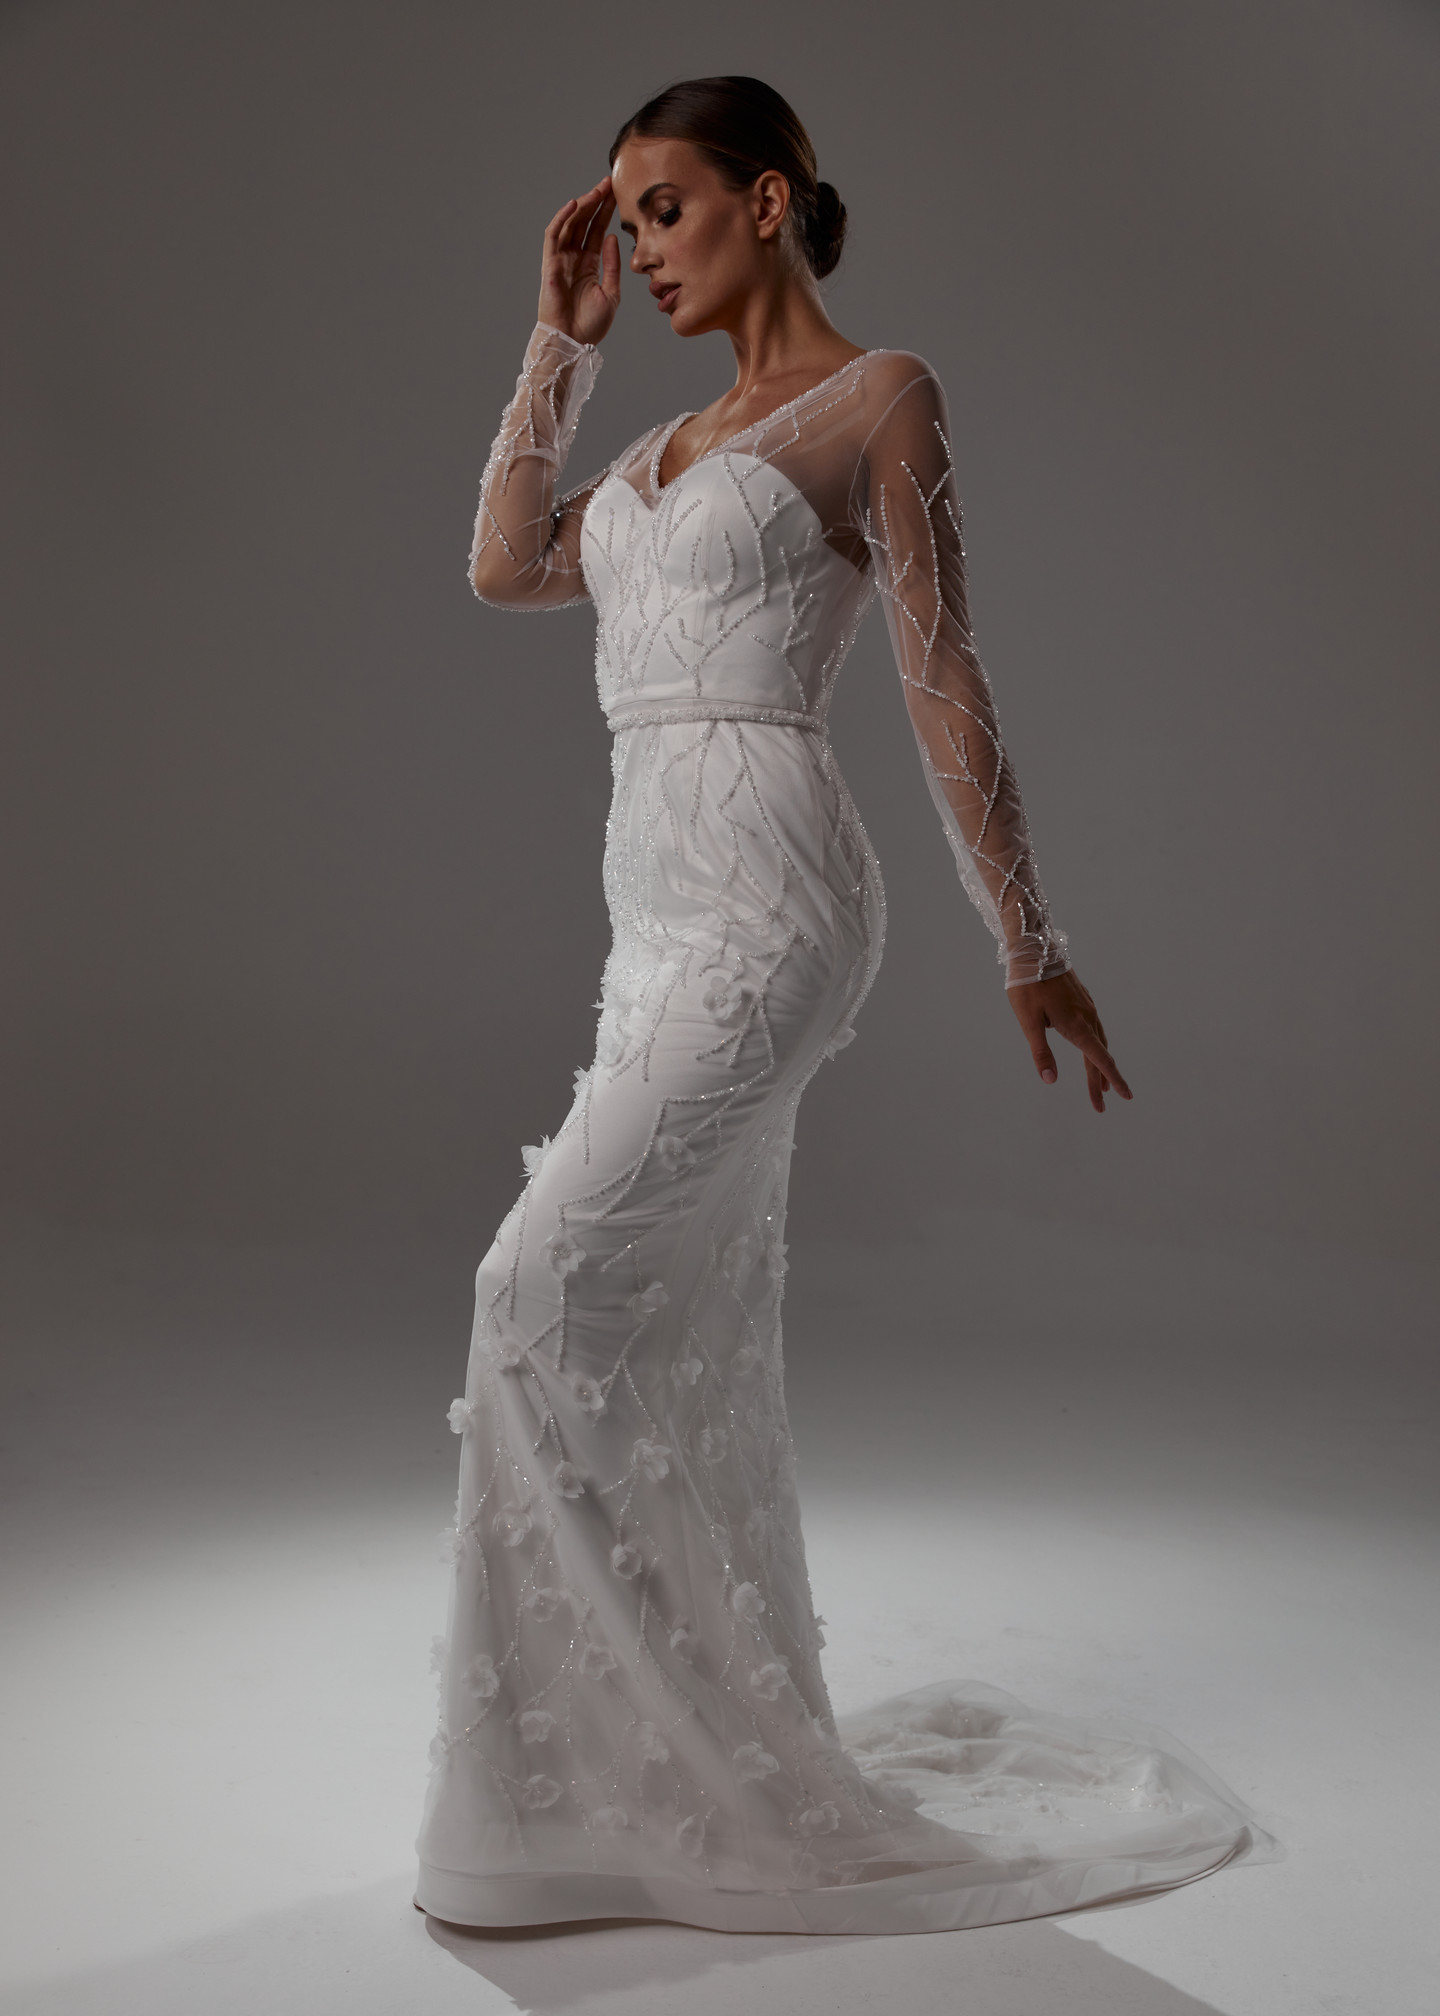 Платье Вера, 2021, одежда, платье, свадебное, молочно-белый, Вера, вышивка, прямой силуэт, рукава, шлейф